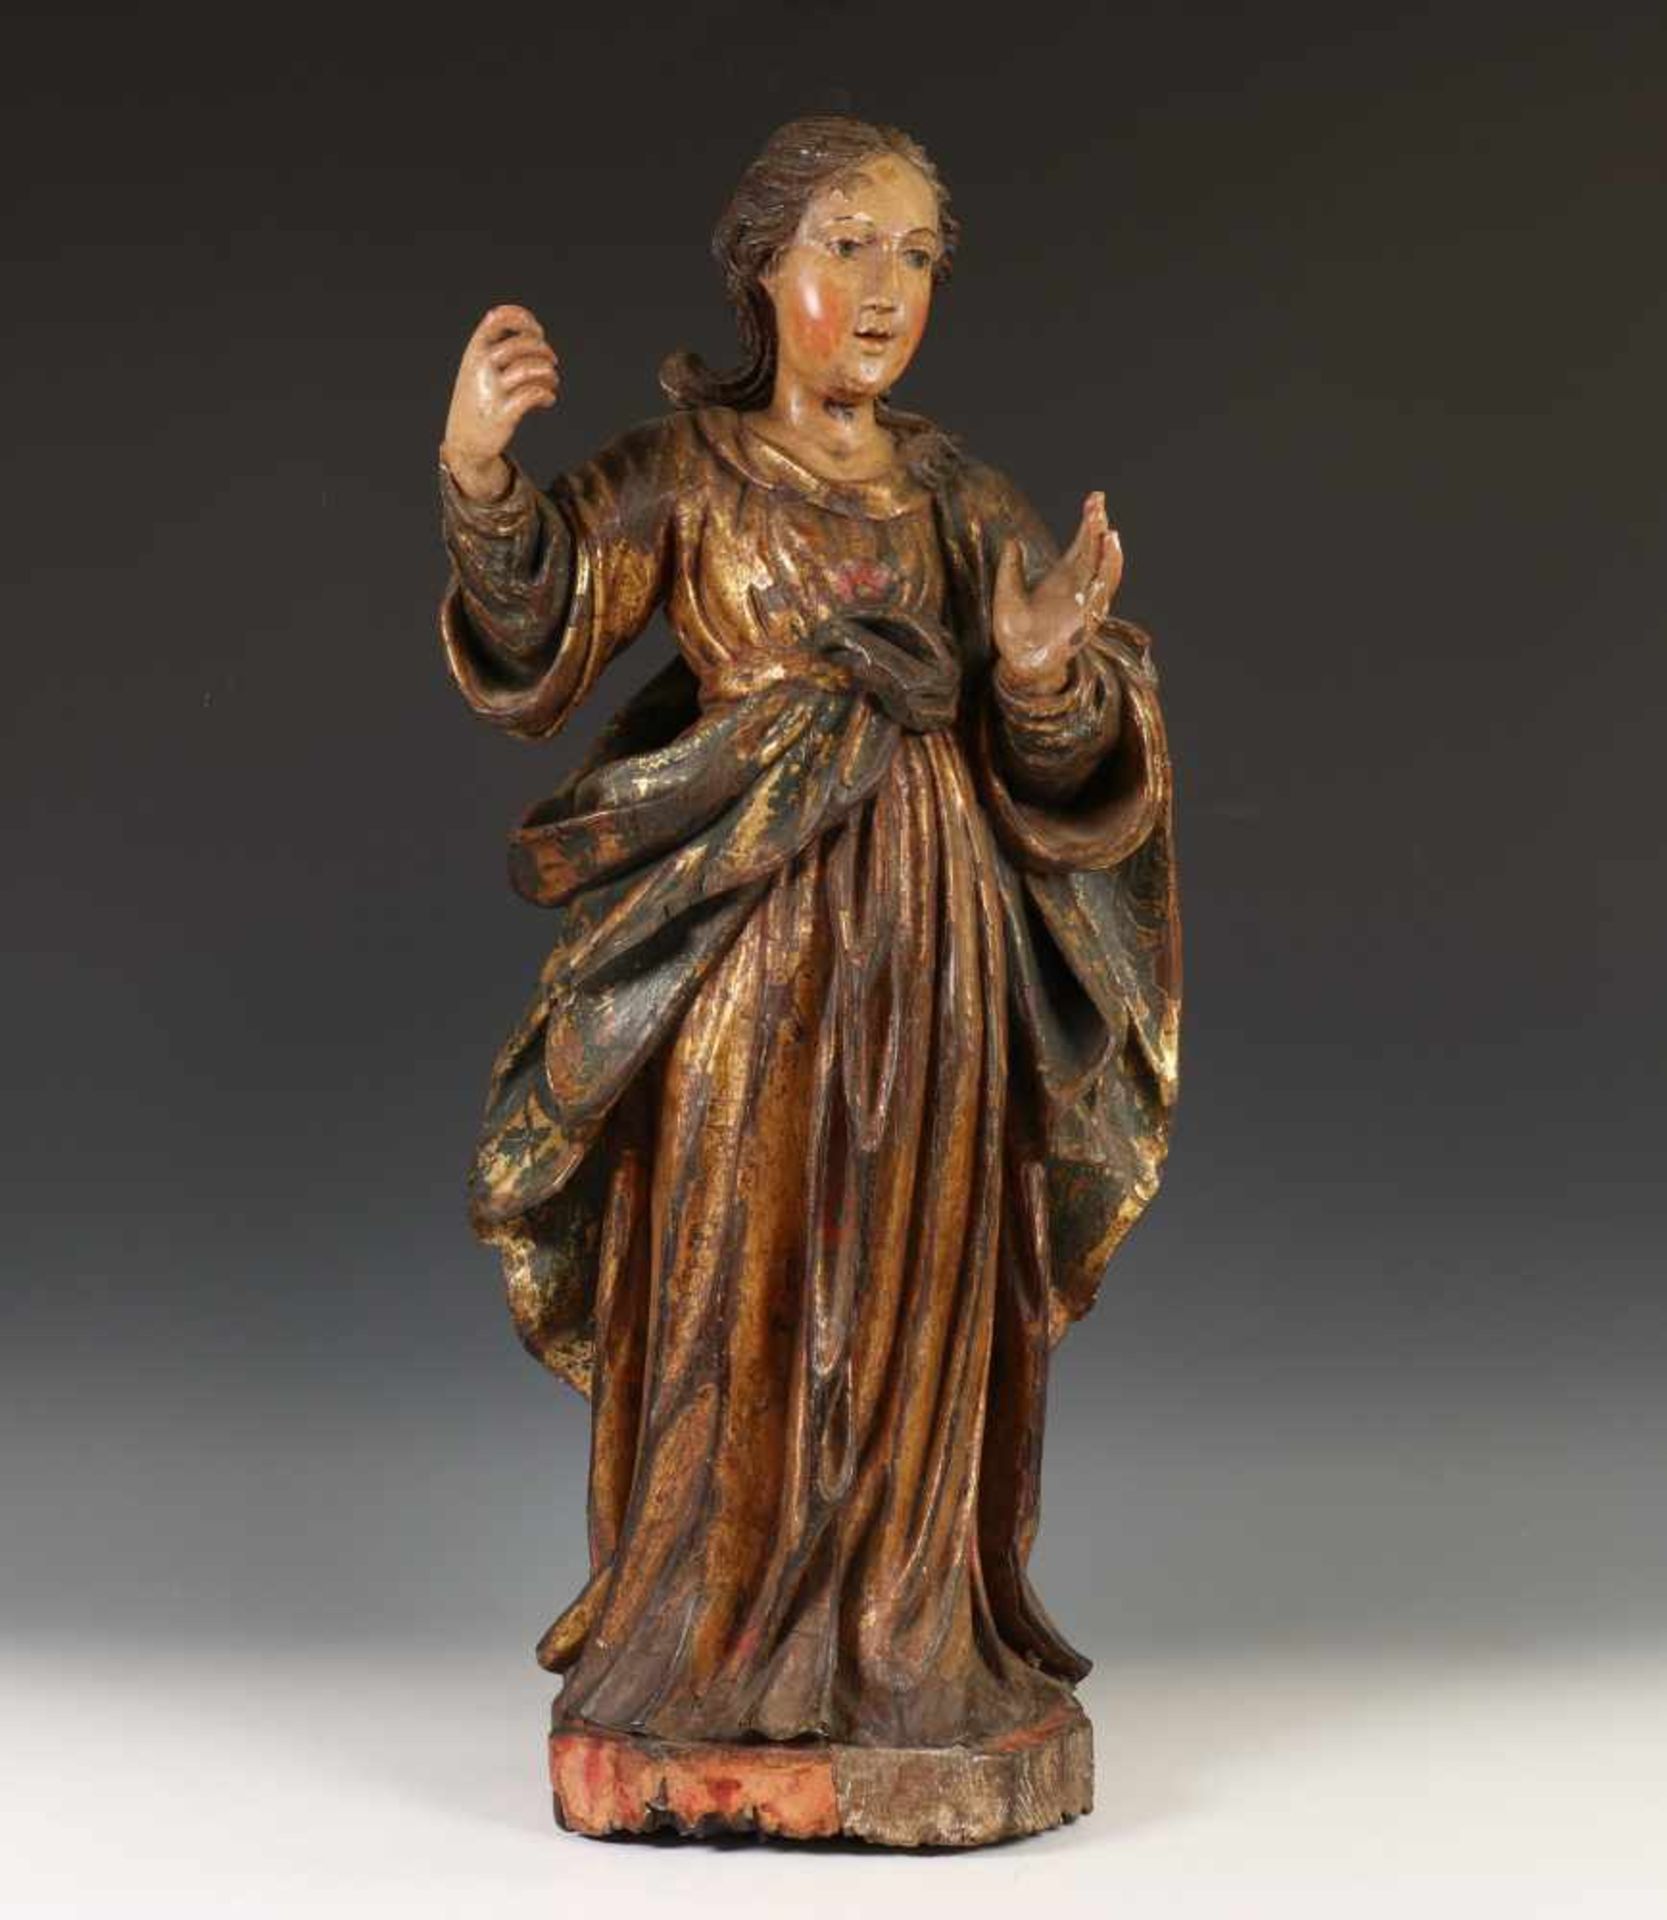 Spanje, gestoken en polychroom houten sculptuur, 18e eeuw;Madonna, staand met vergulde mantel met